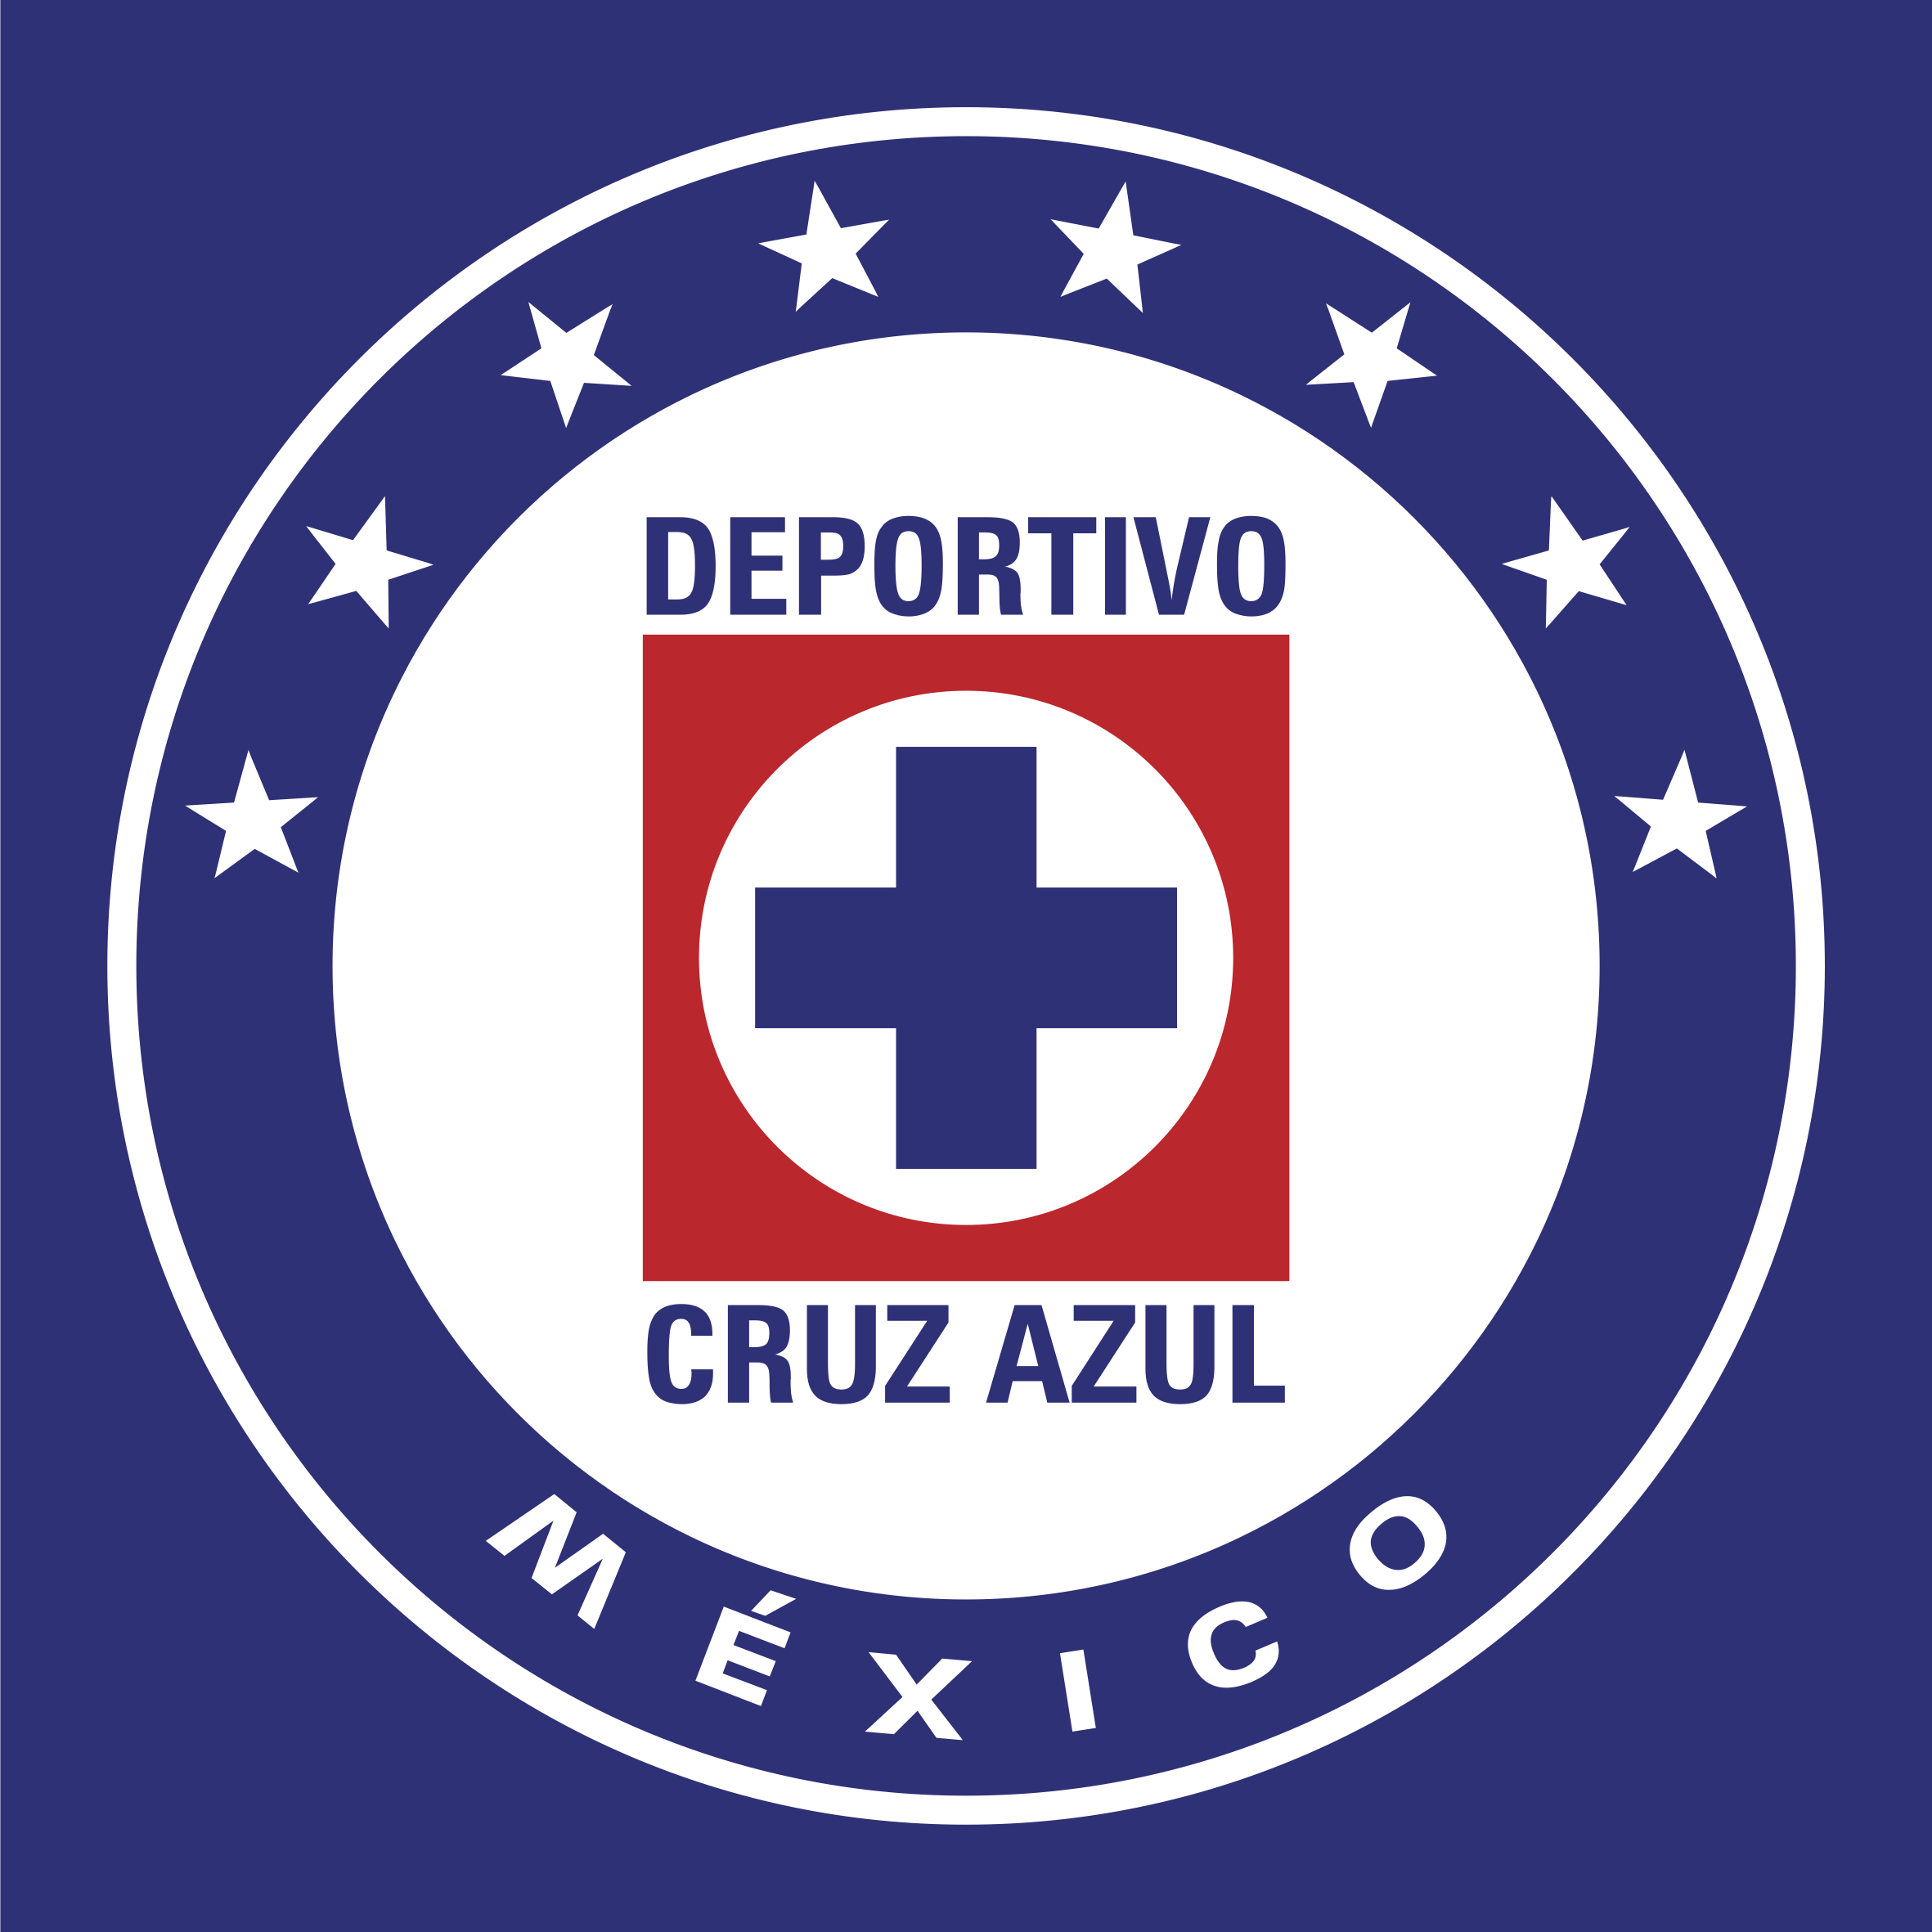 El Cruz Azul debe ganar Chiapasparalelo